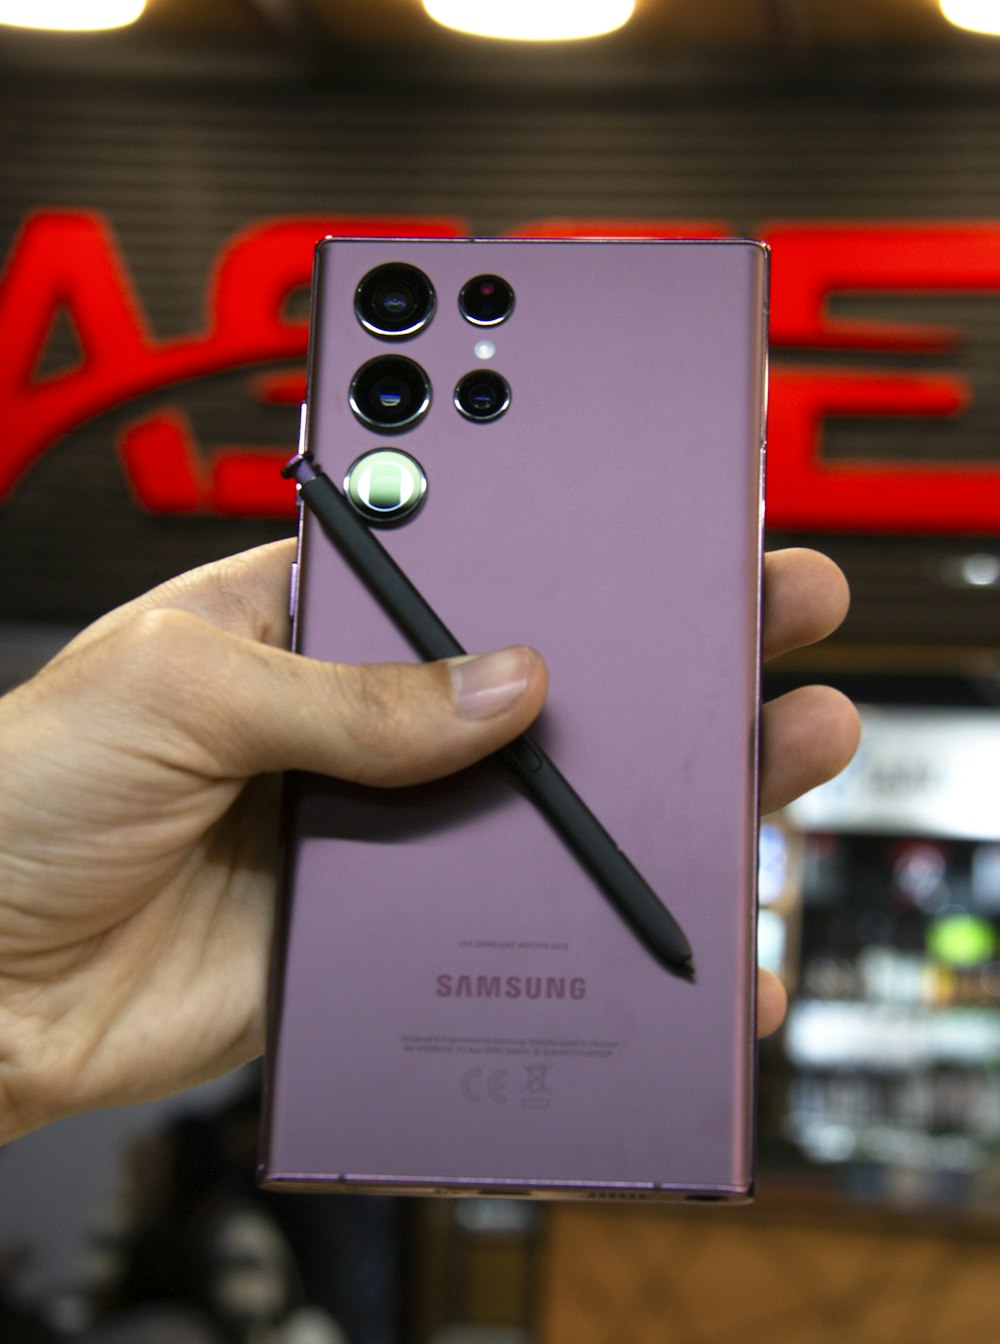 Una persona sosteniendo un teléfono Samsung púrpura en la mano